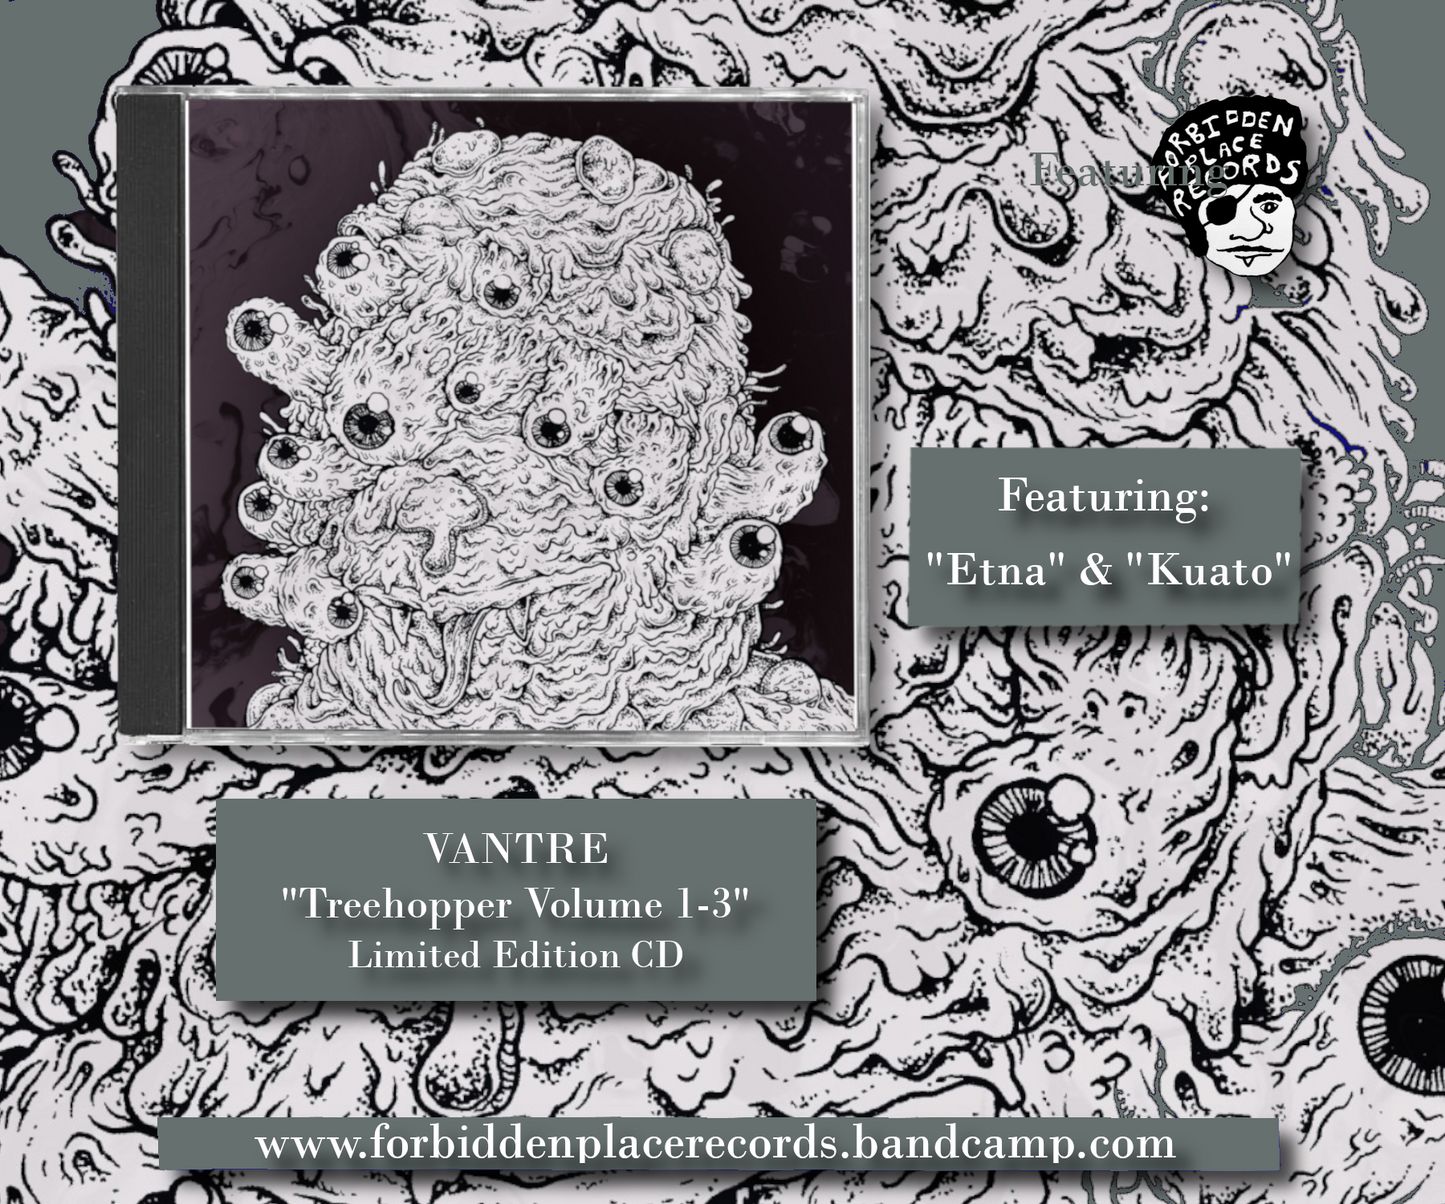 Vantre - "Treehopper" Vol. 1-3 Compact Disc